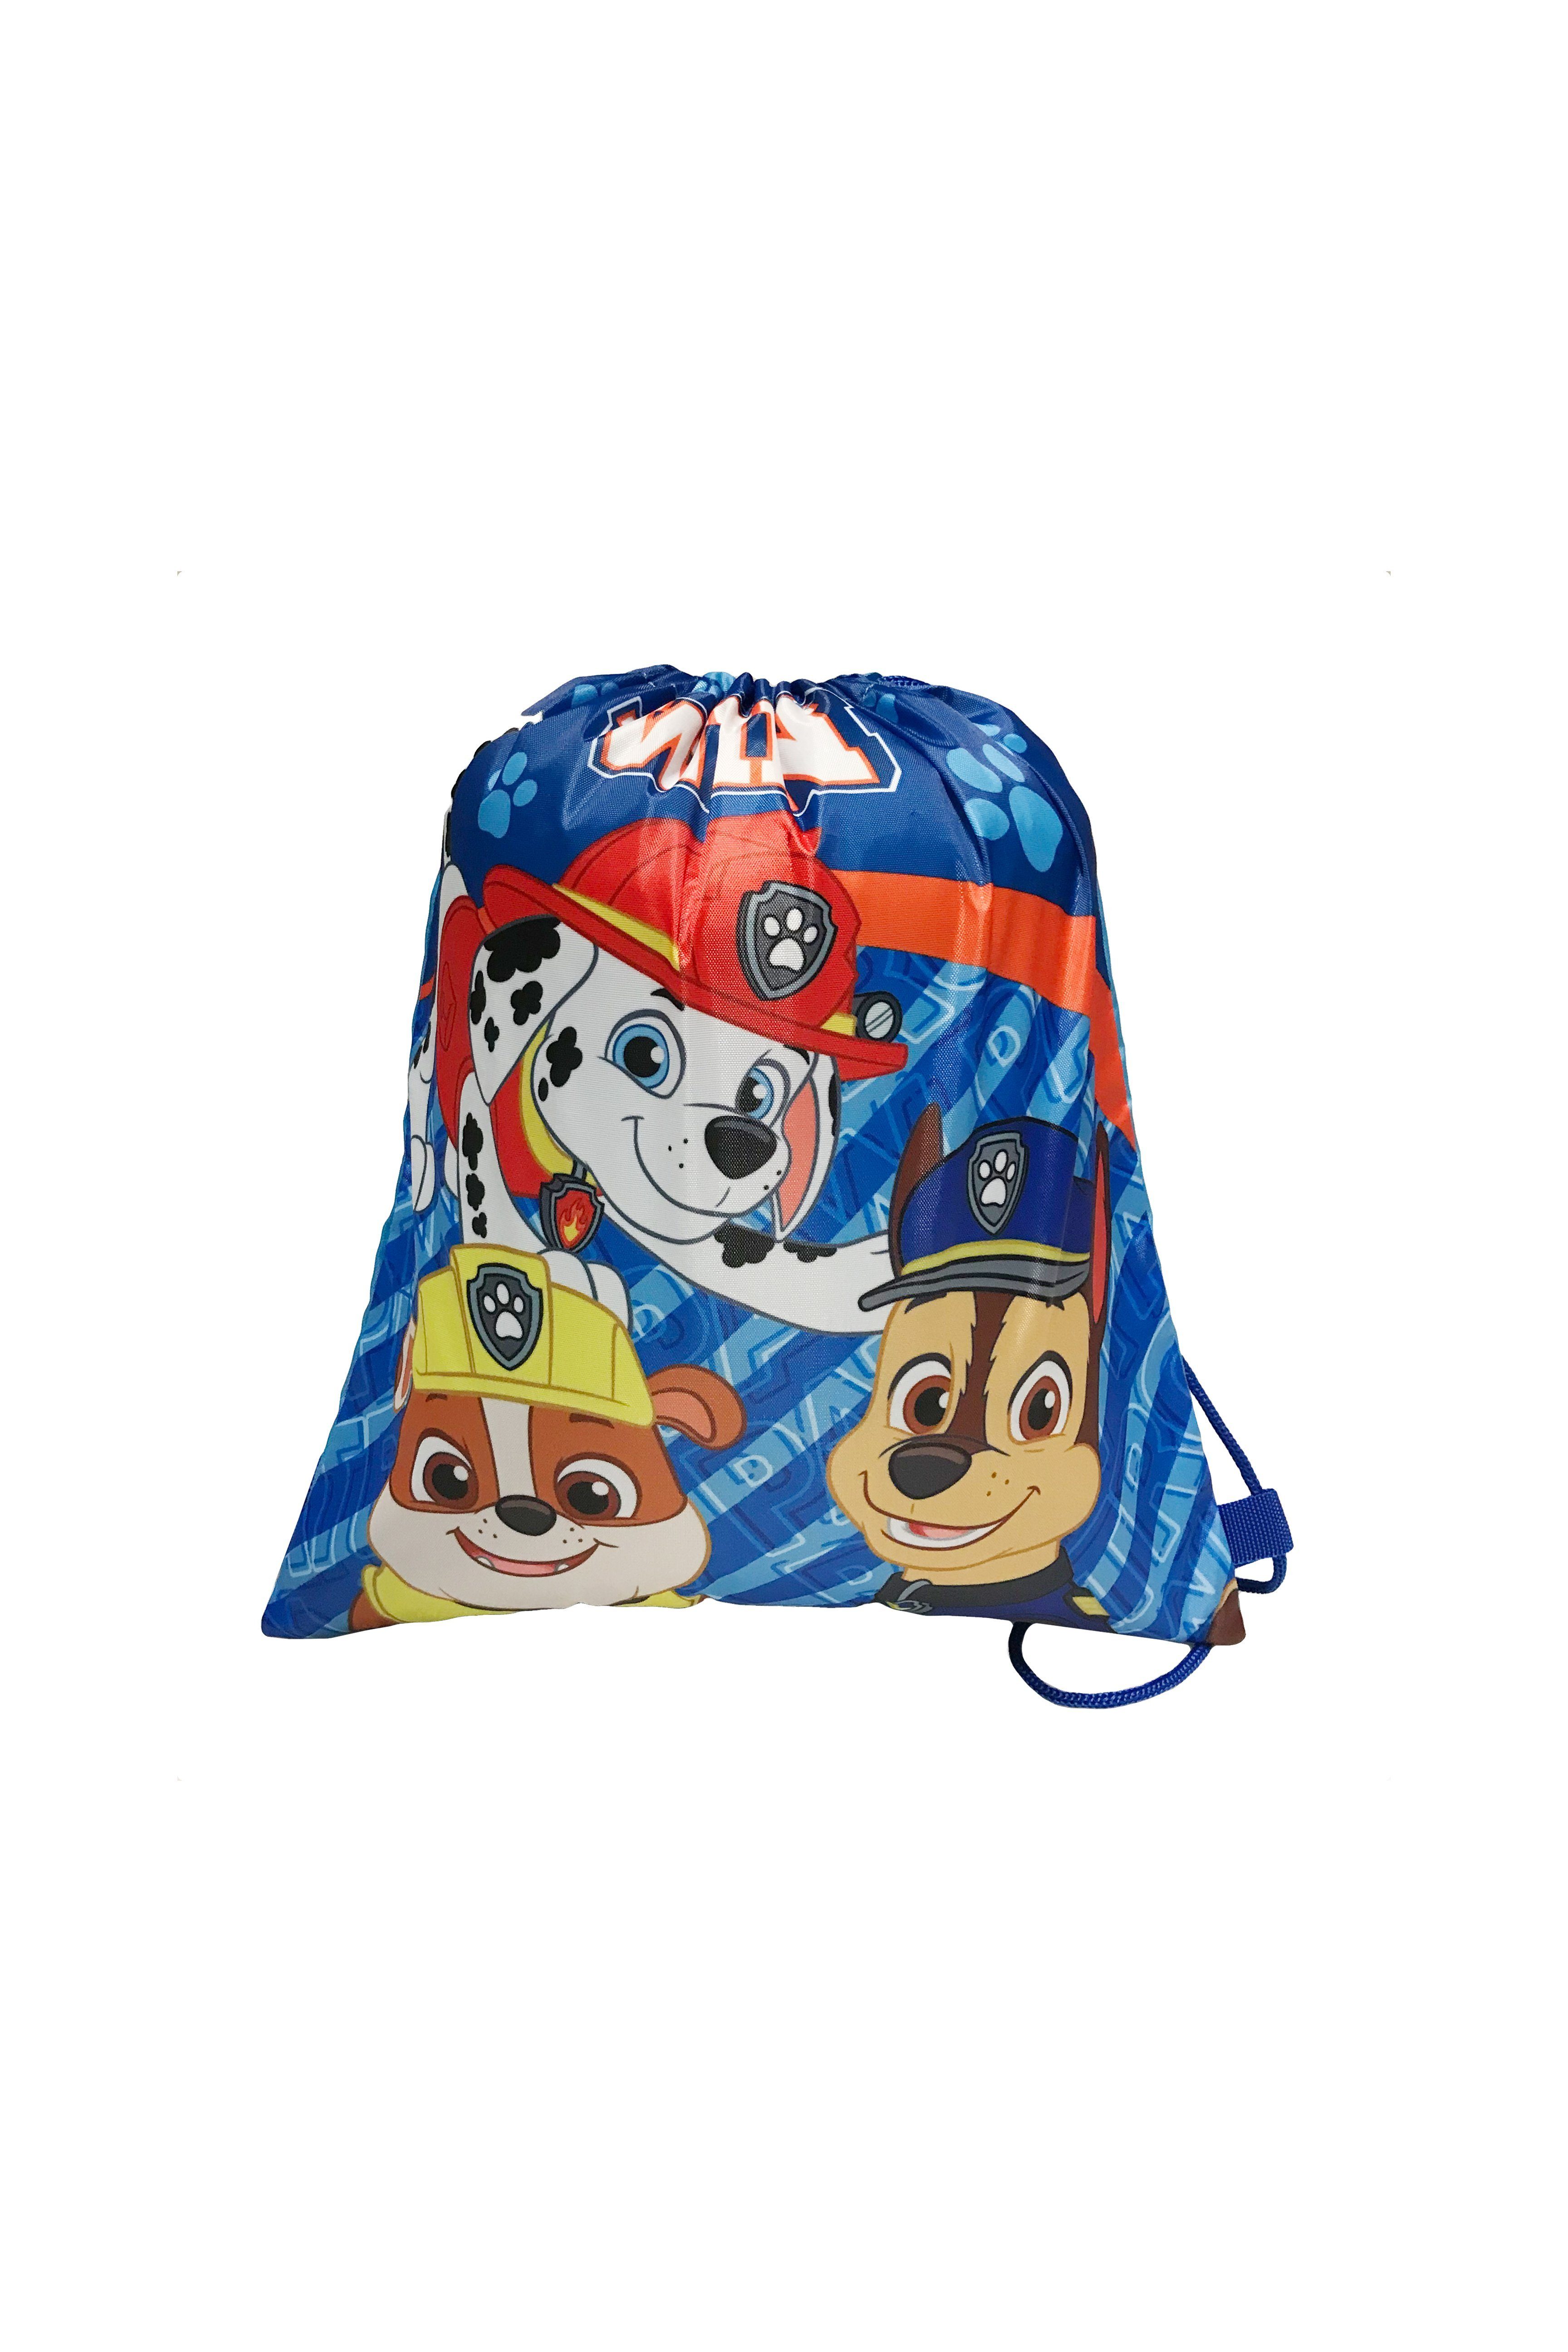 PAW PATROL Gymbag " Paw Patrol " Tasche für Kinder Schule Sport Rucksack